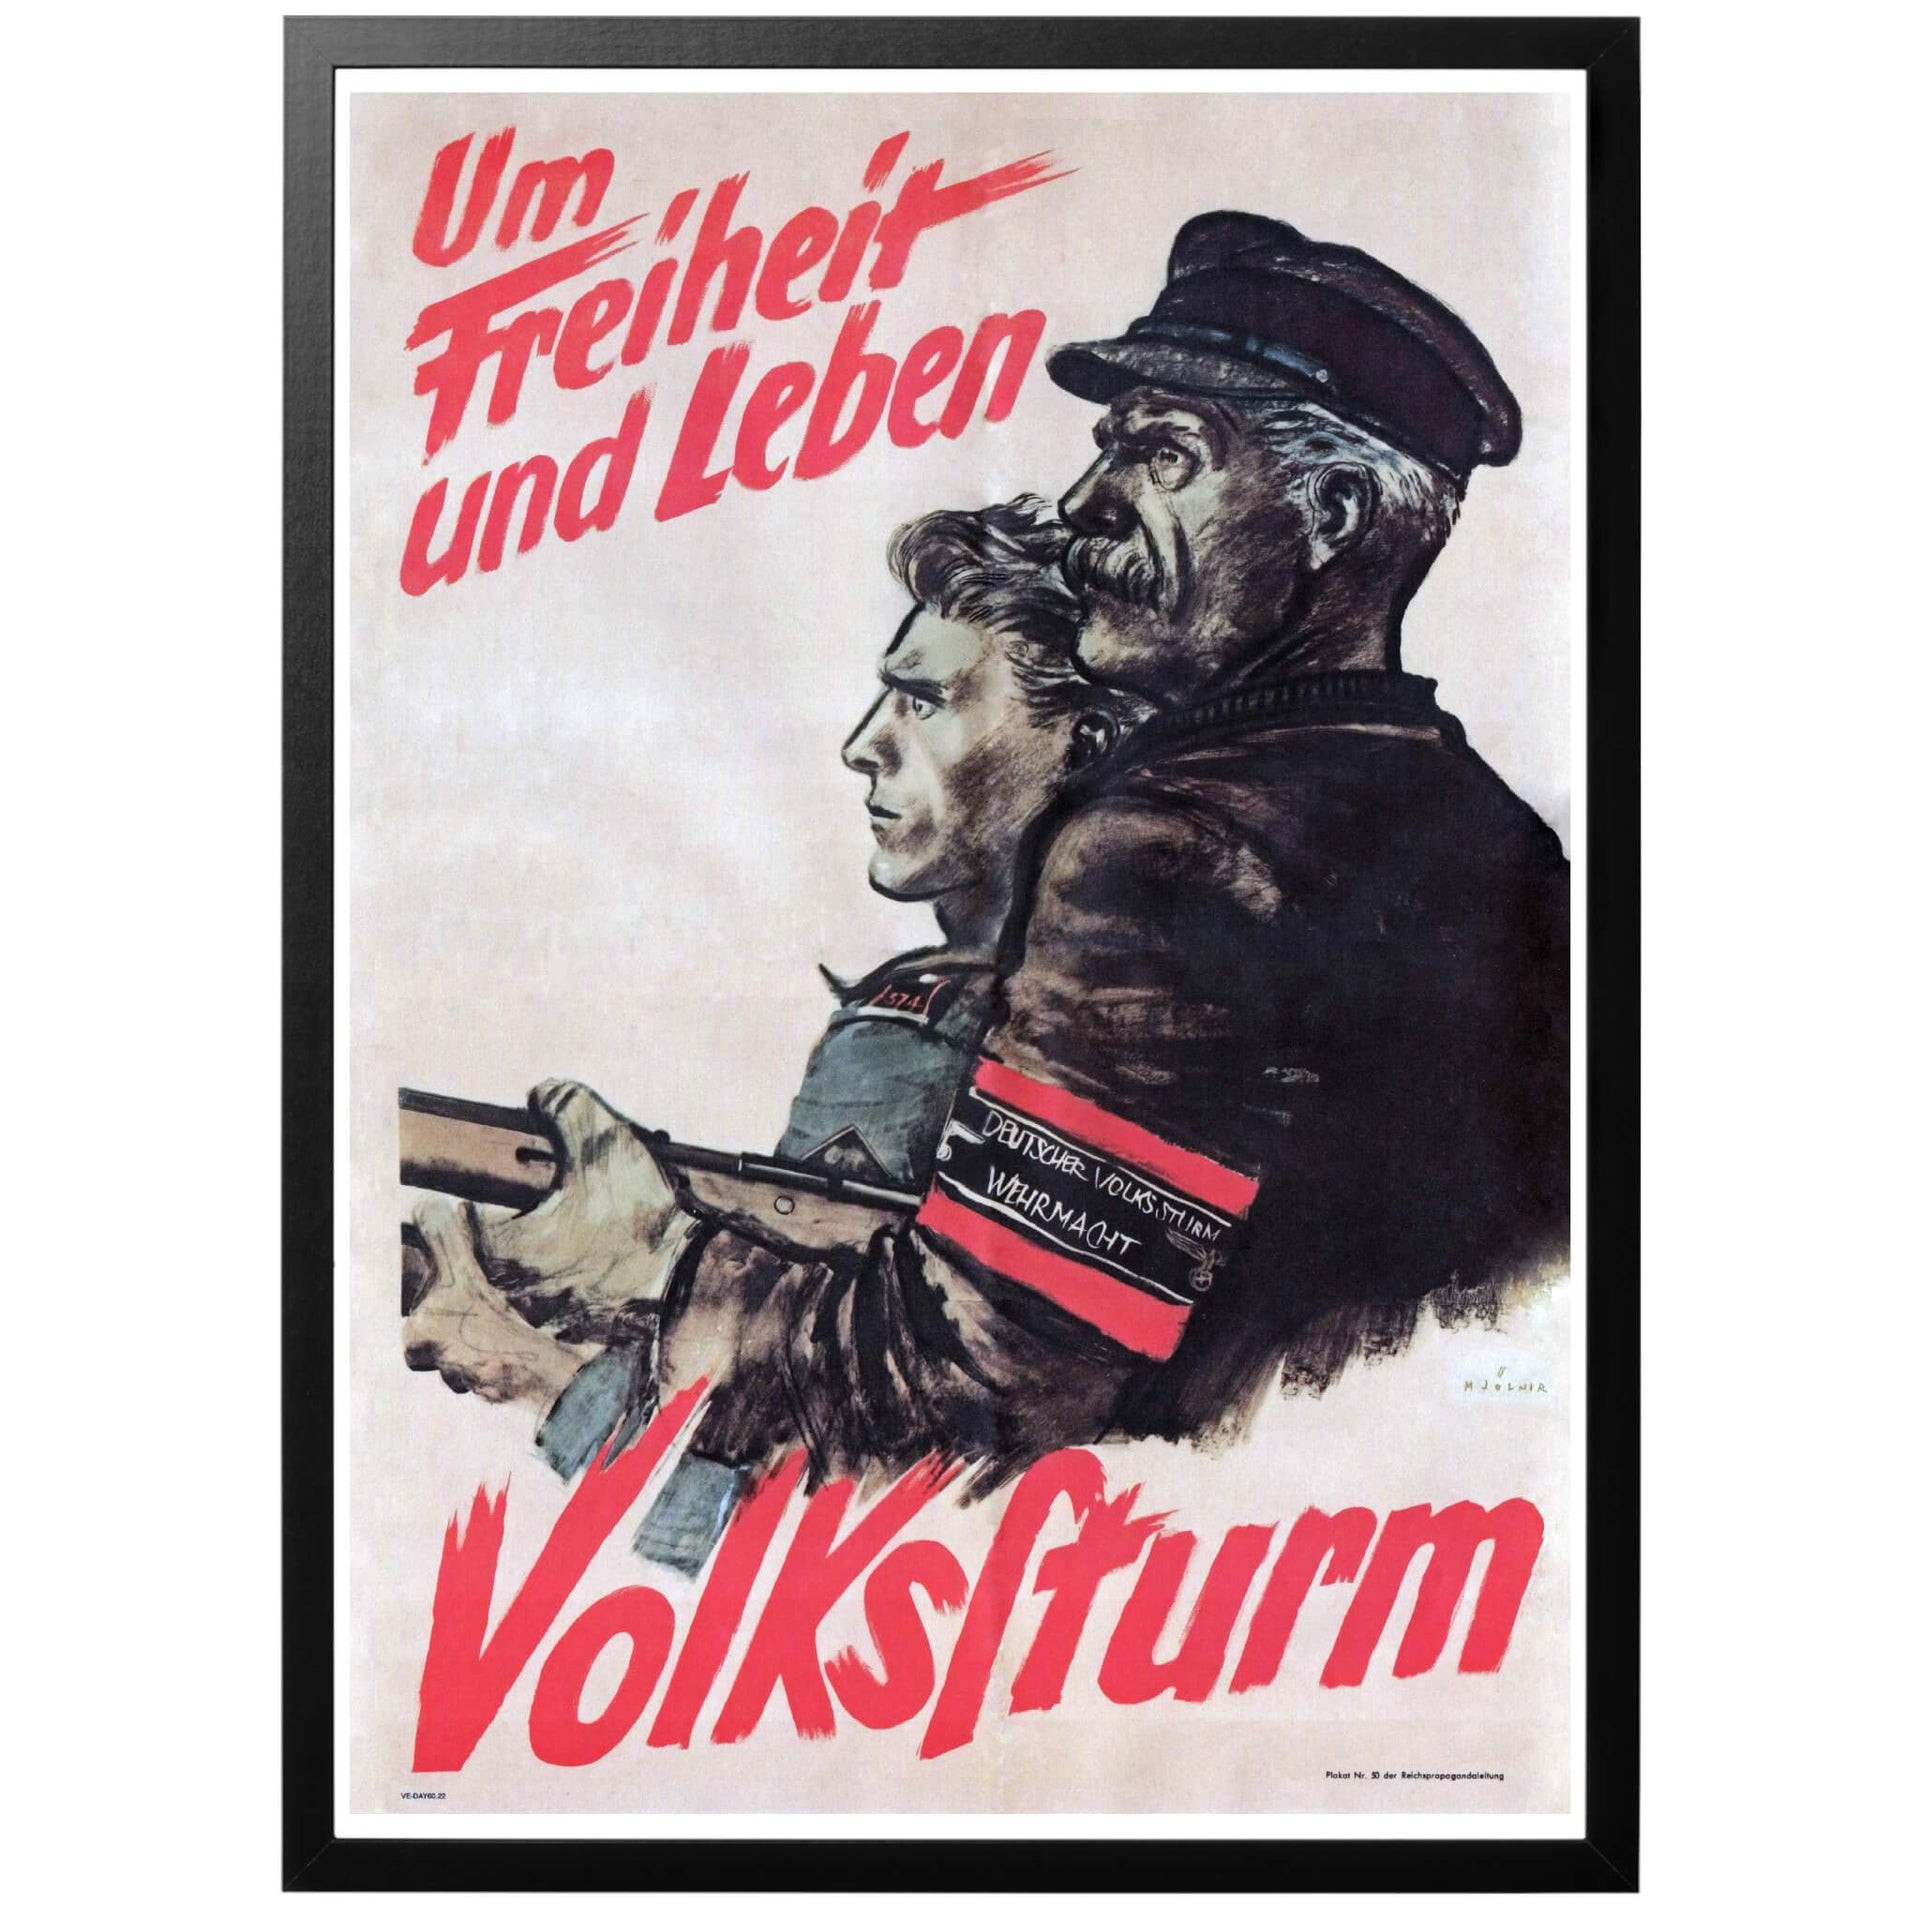 Um Freiheit und Leben - Volkssturm  Tysk WWII affisch från1944 av Hans Schweitzer (Mjölnir). Värvningsaffisch för Volkssturm (Folkstormen), en slags hemvärnsorganisation bildad 1944. Alla män mellan 16-60 år som inte var en del av krigsorganisationen eller hade ett arbete som var vitalt för samhället kallades in.